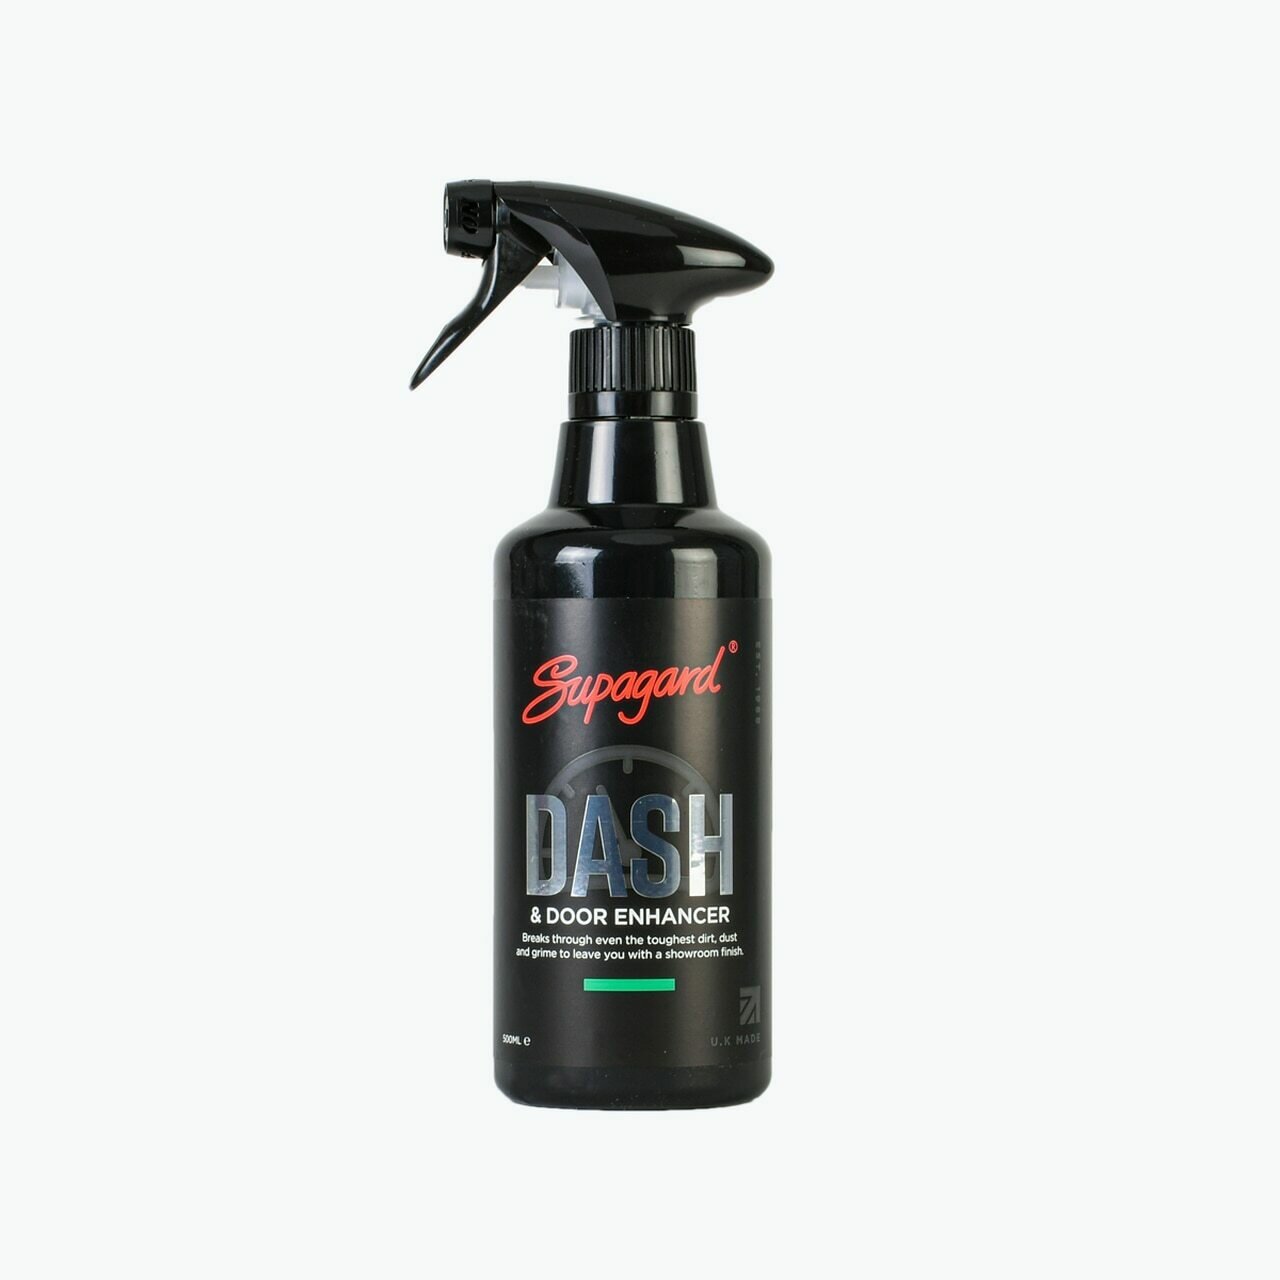 Dash & Door Enhancer 500ml